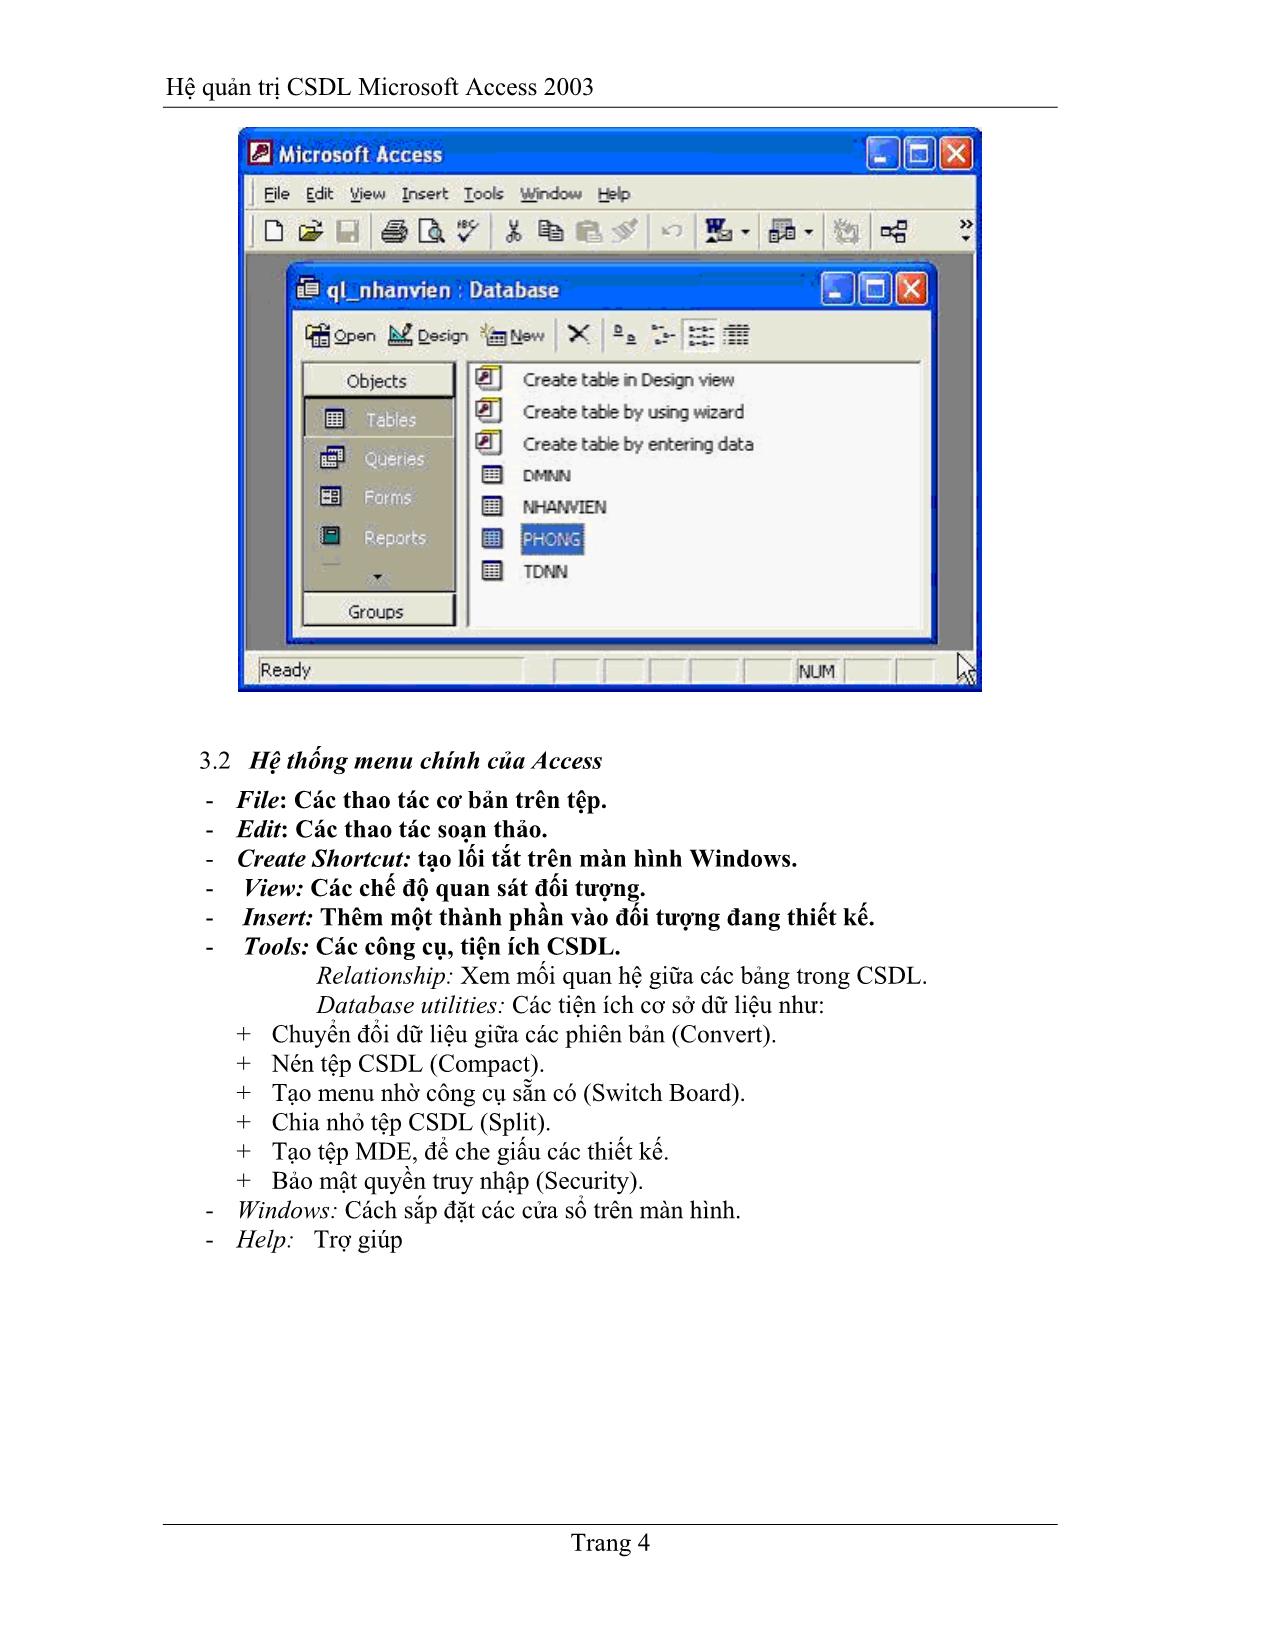 Hệ quản trị CSDL Microsoft Access 2003 trang 4